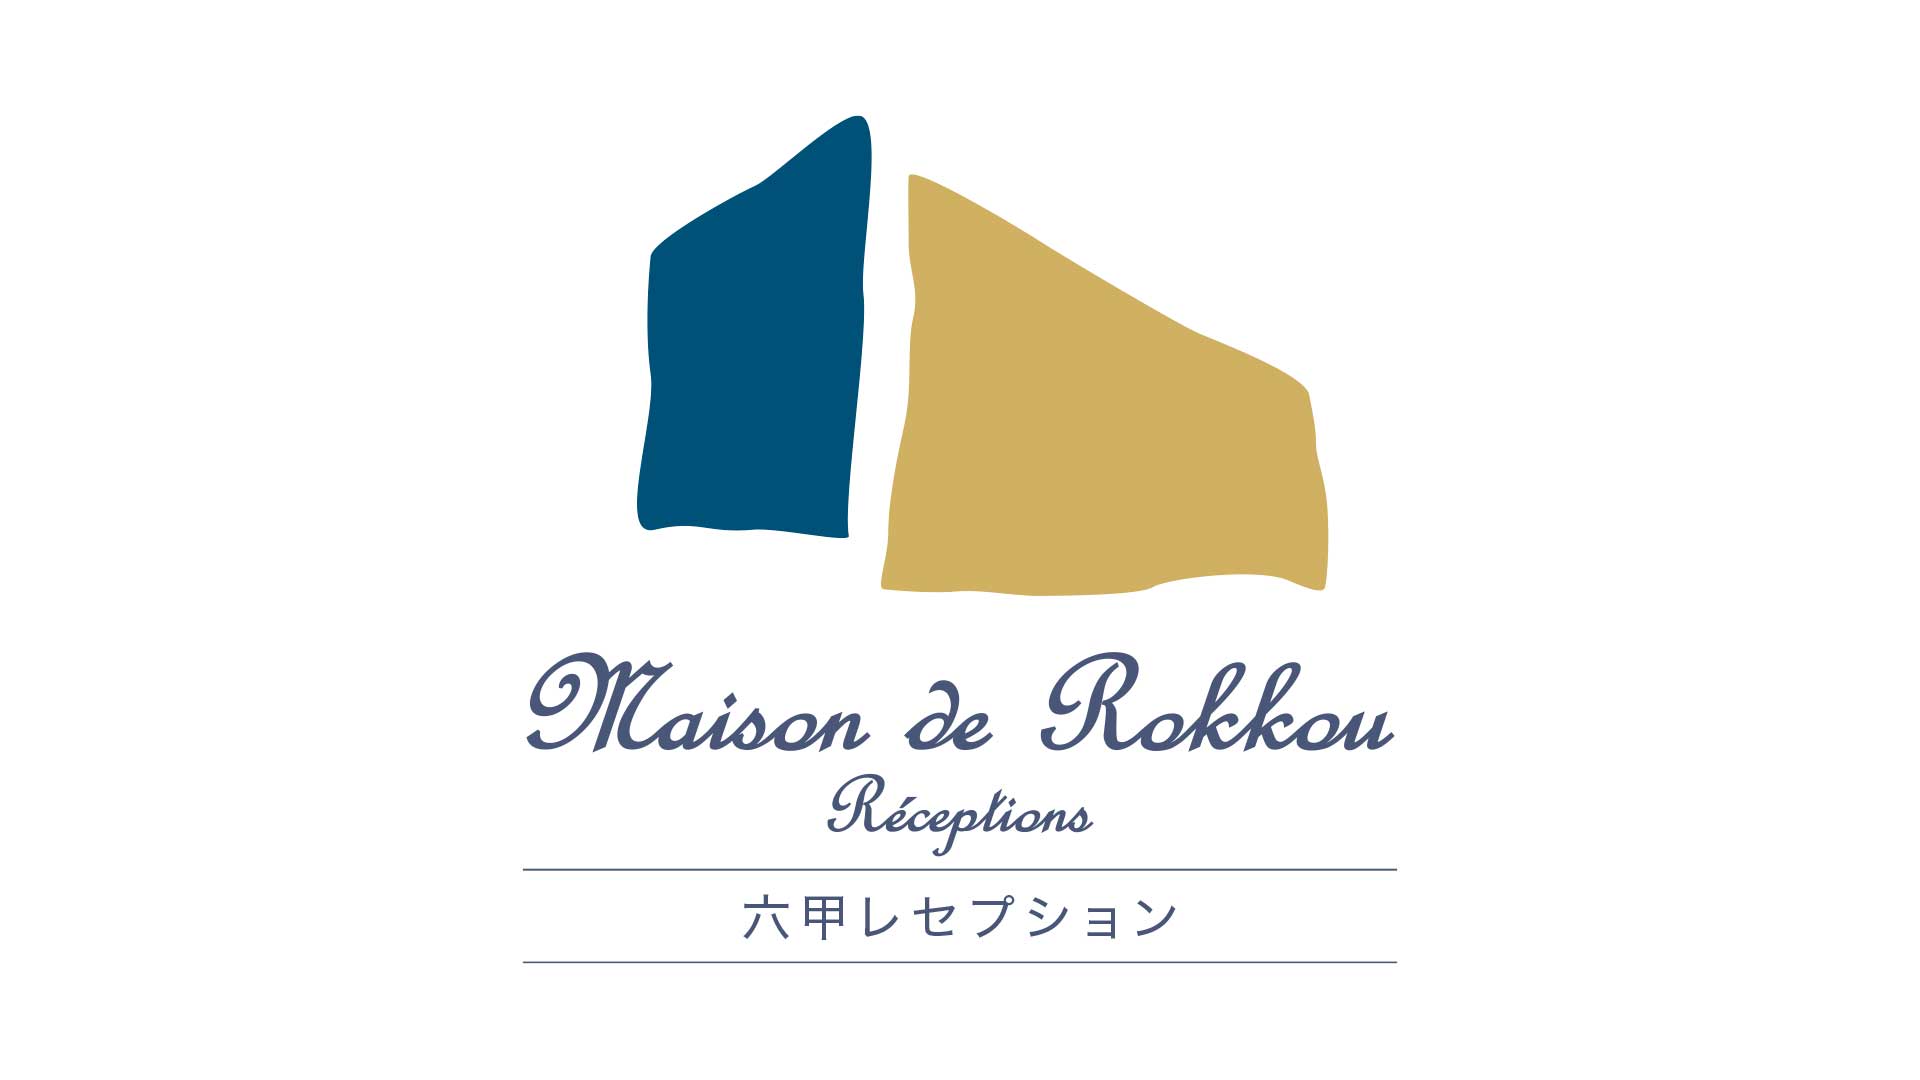 Maison de Rokkouのロゴマーク